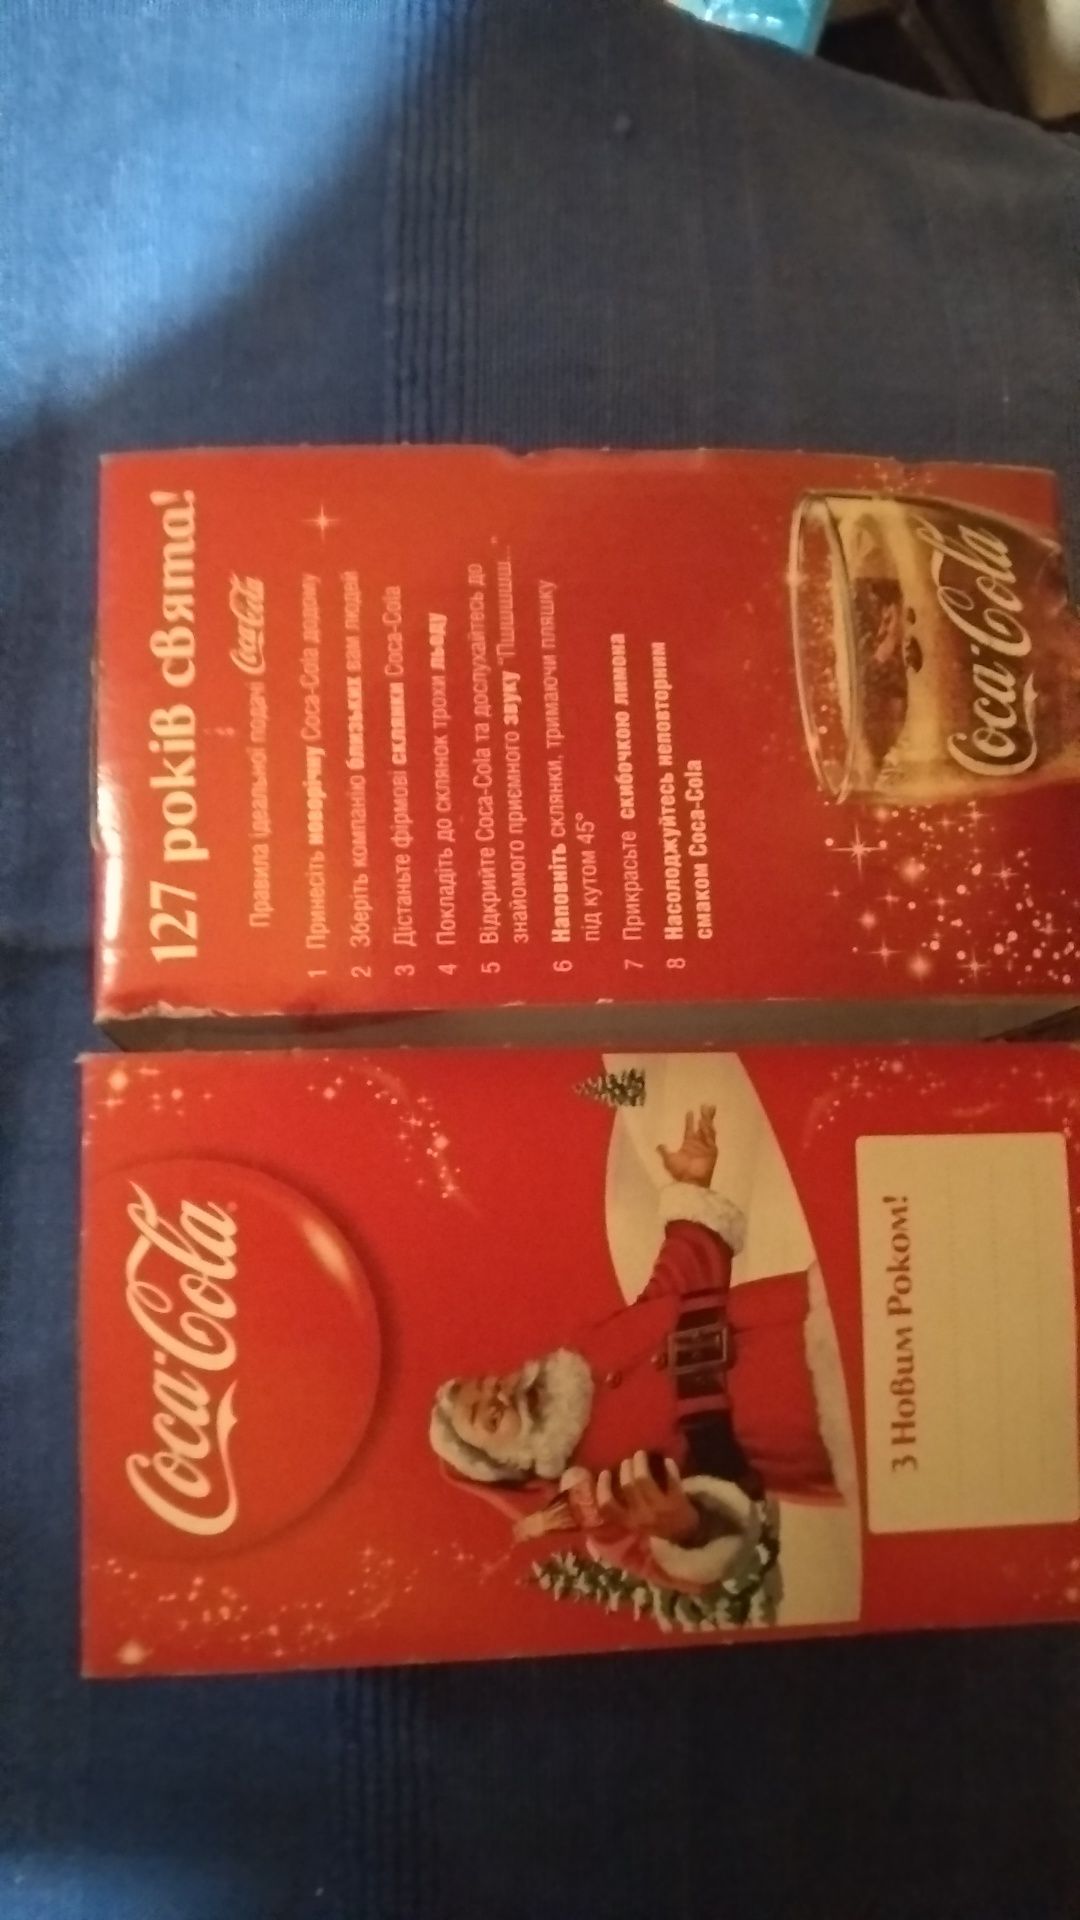 Бокалы Кока кола Coca cola новогодние новорічні